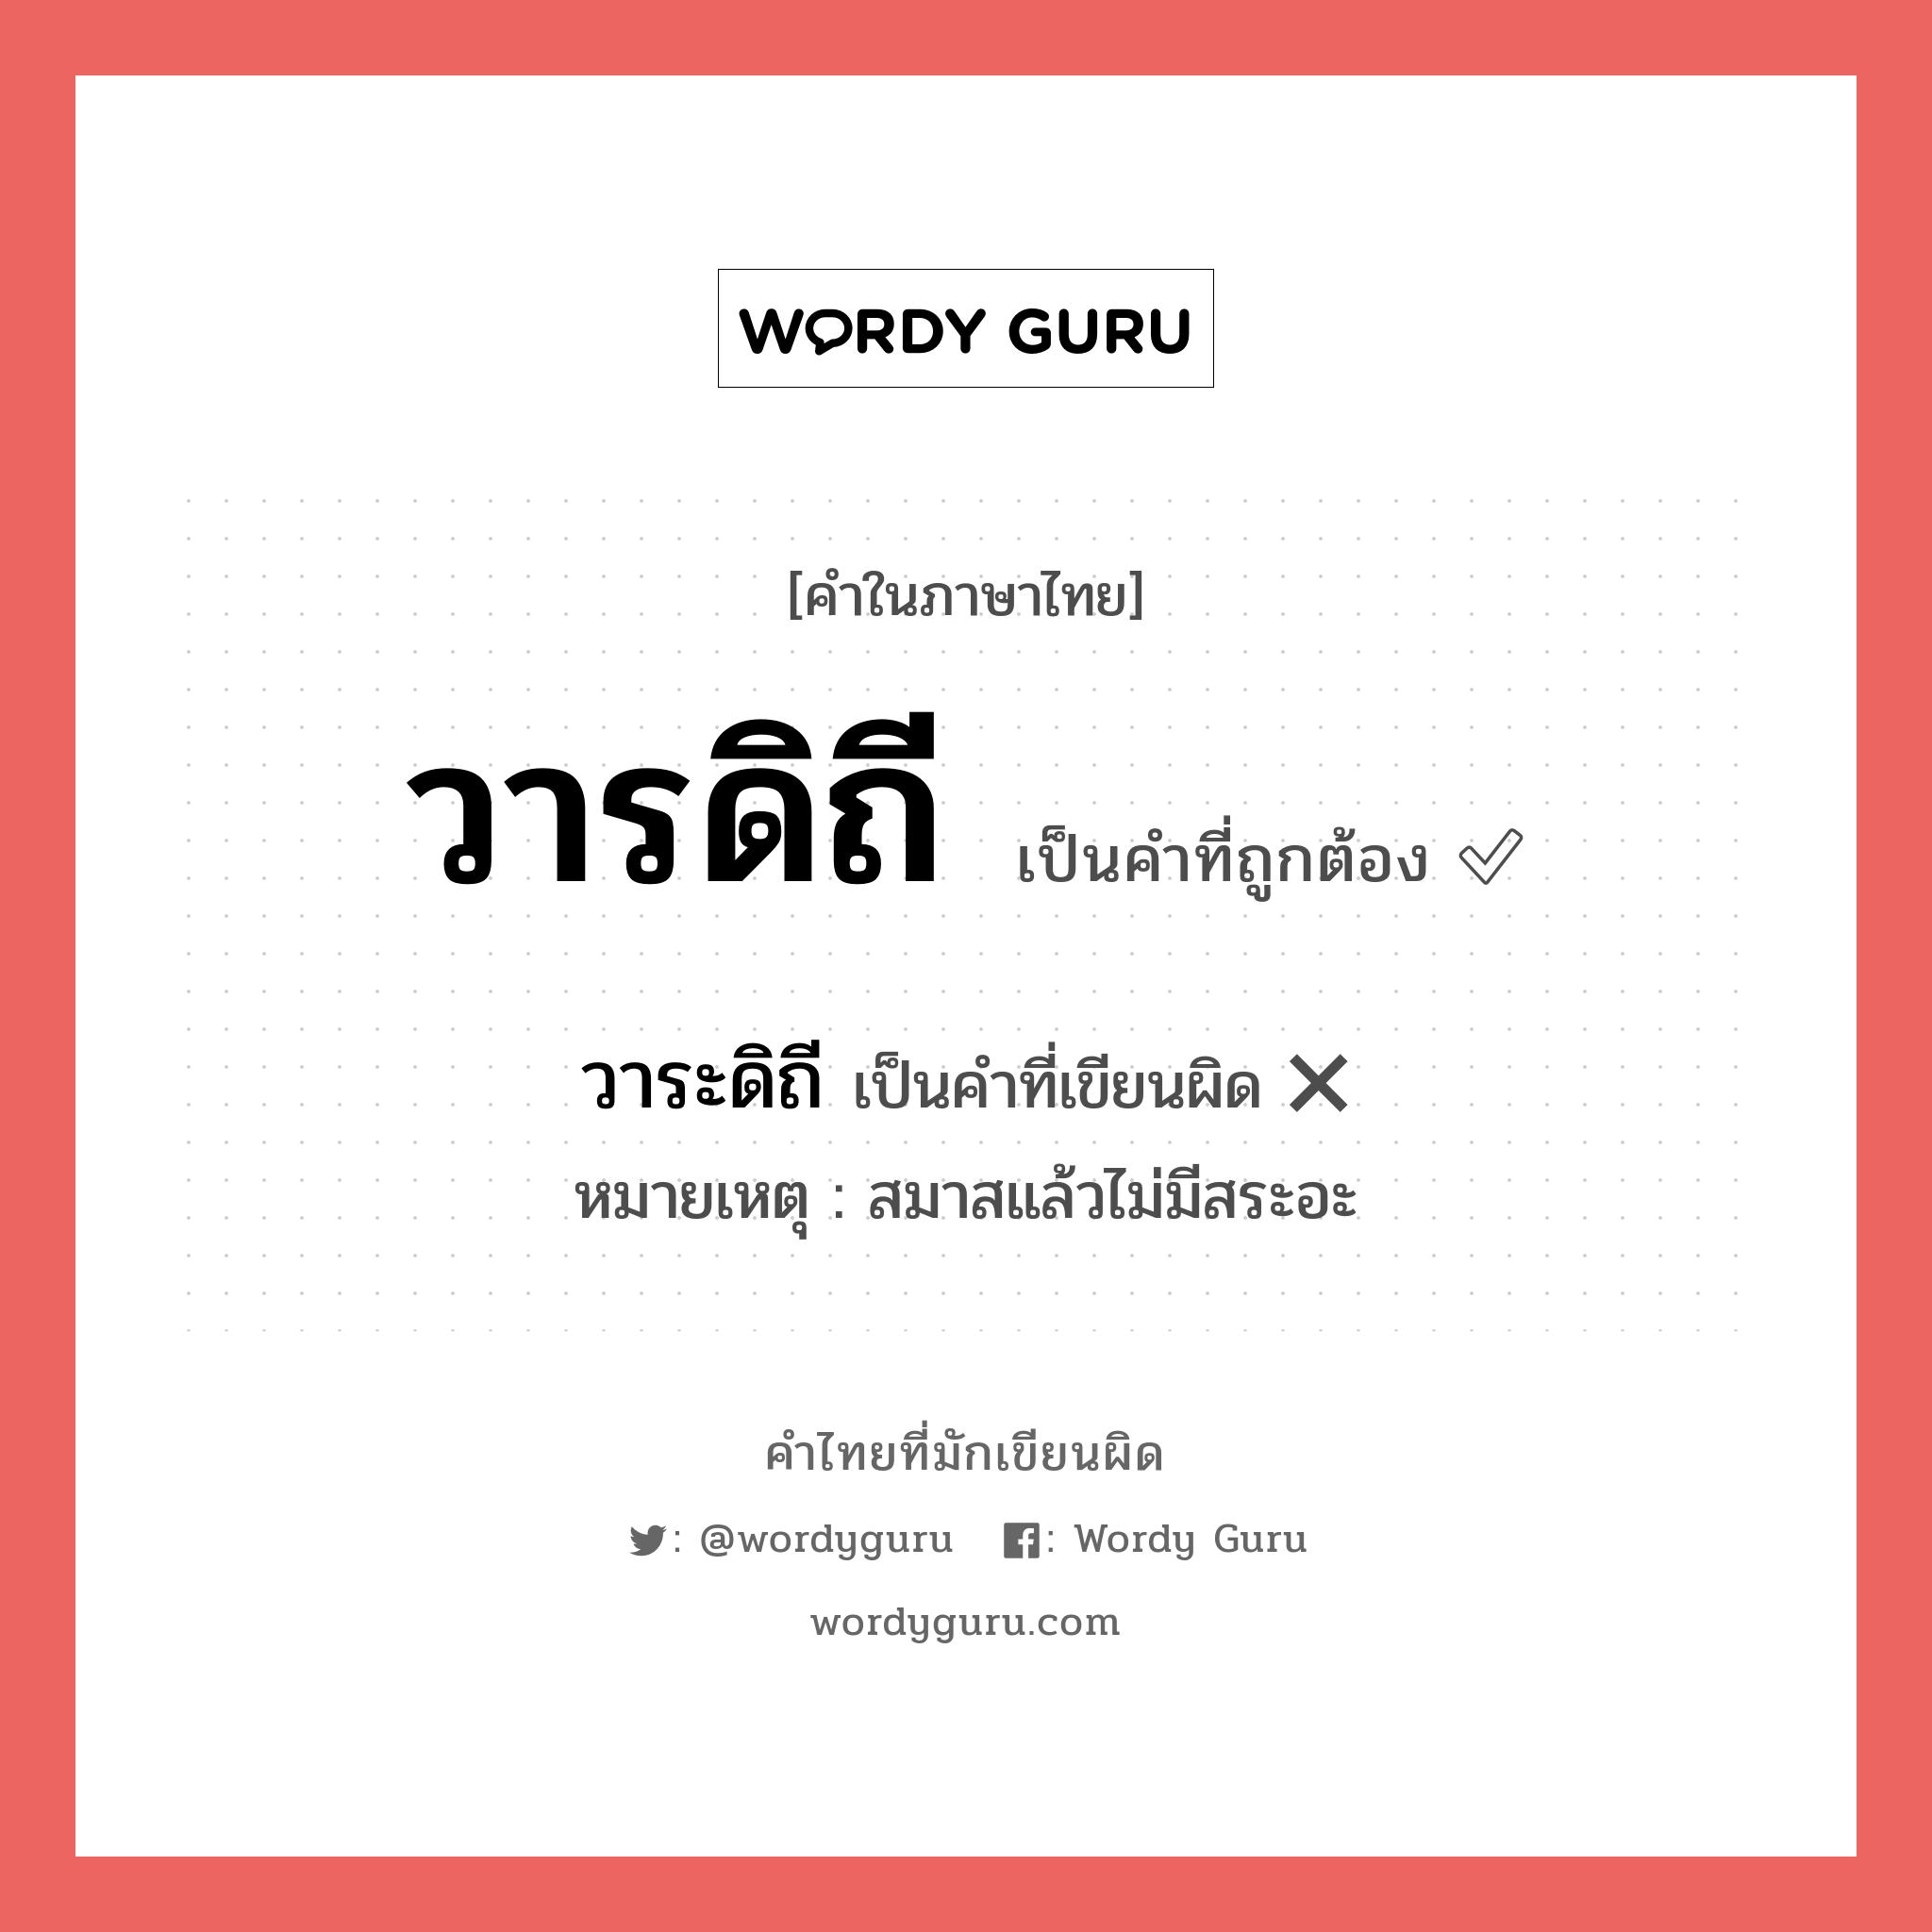 วารดิถี หรือ วาระดิถี เขียนยังไง? คำไหนเขียนถูก?, คำในภาษาไทยที่มักเขียนผิด วารดิถี คำที่ผิด ❌ วาระดิถี หมายเหตุ สมาสแล้วไม่มีสระอะ